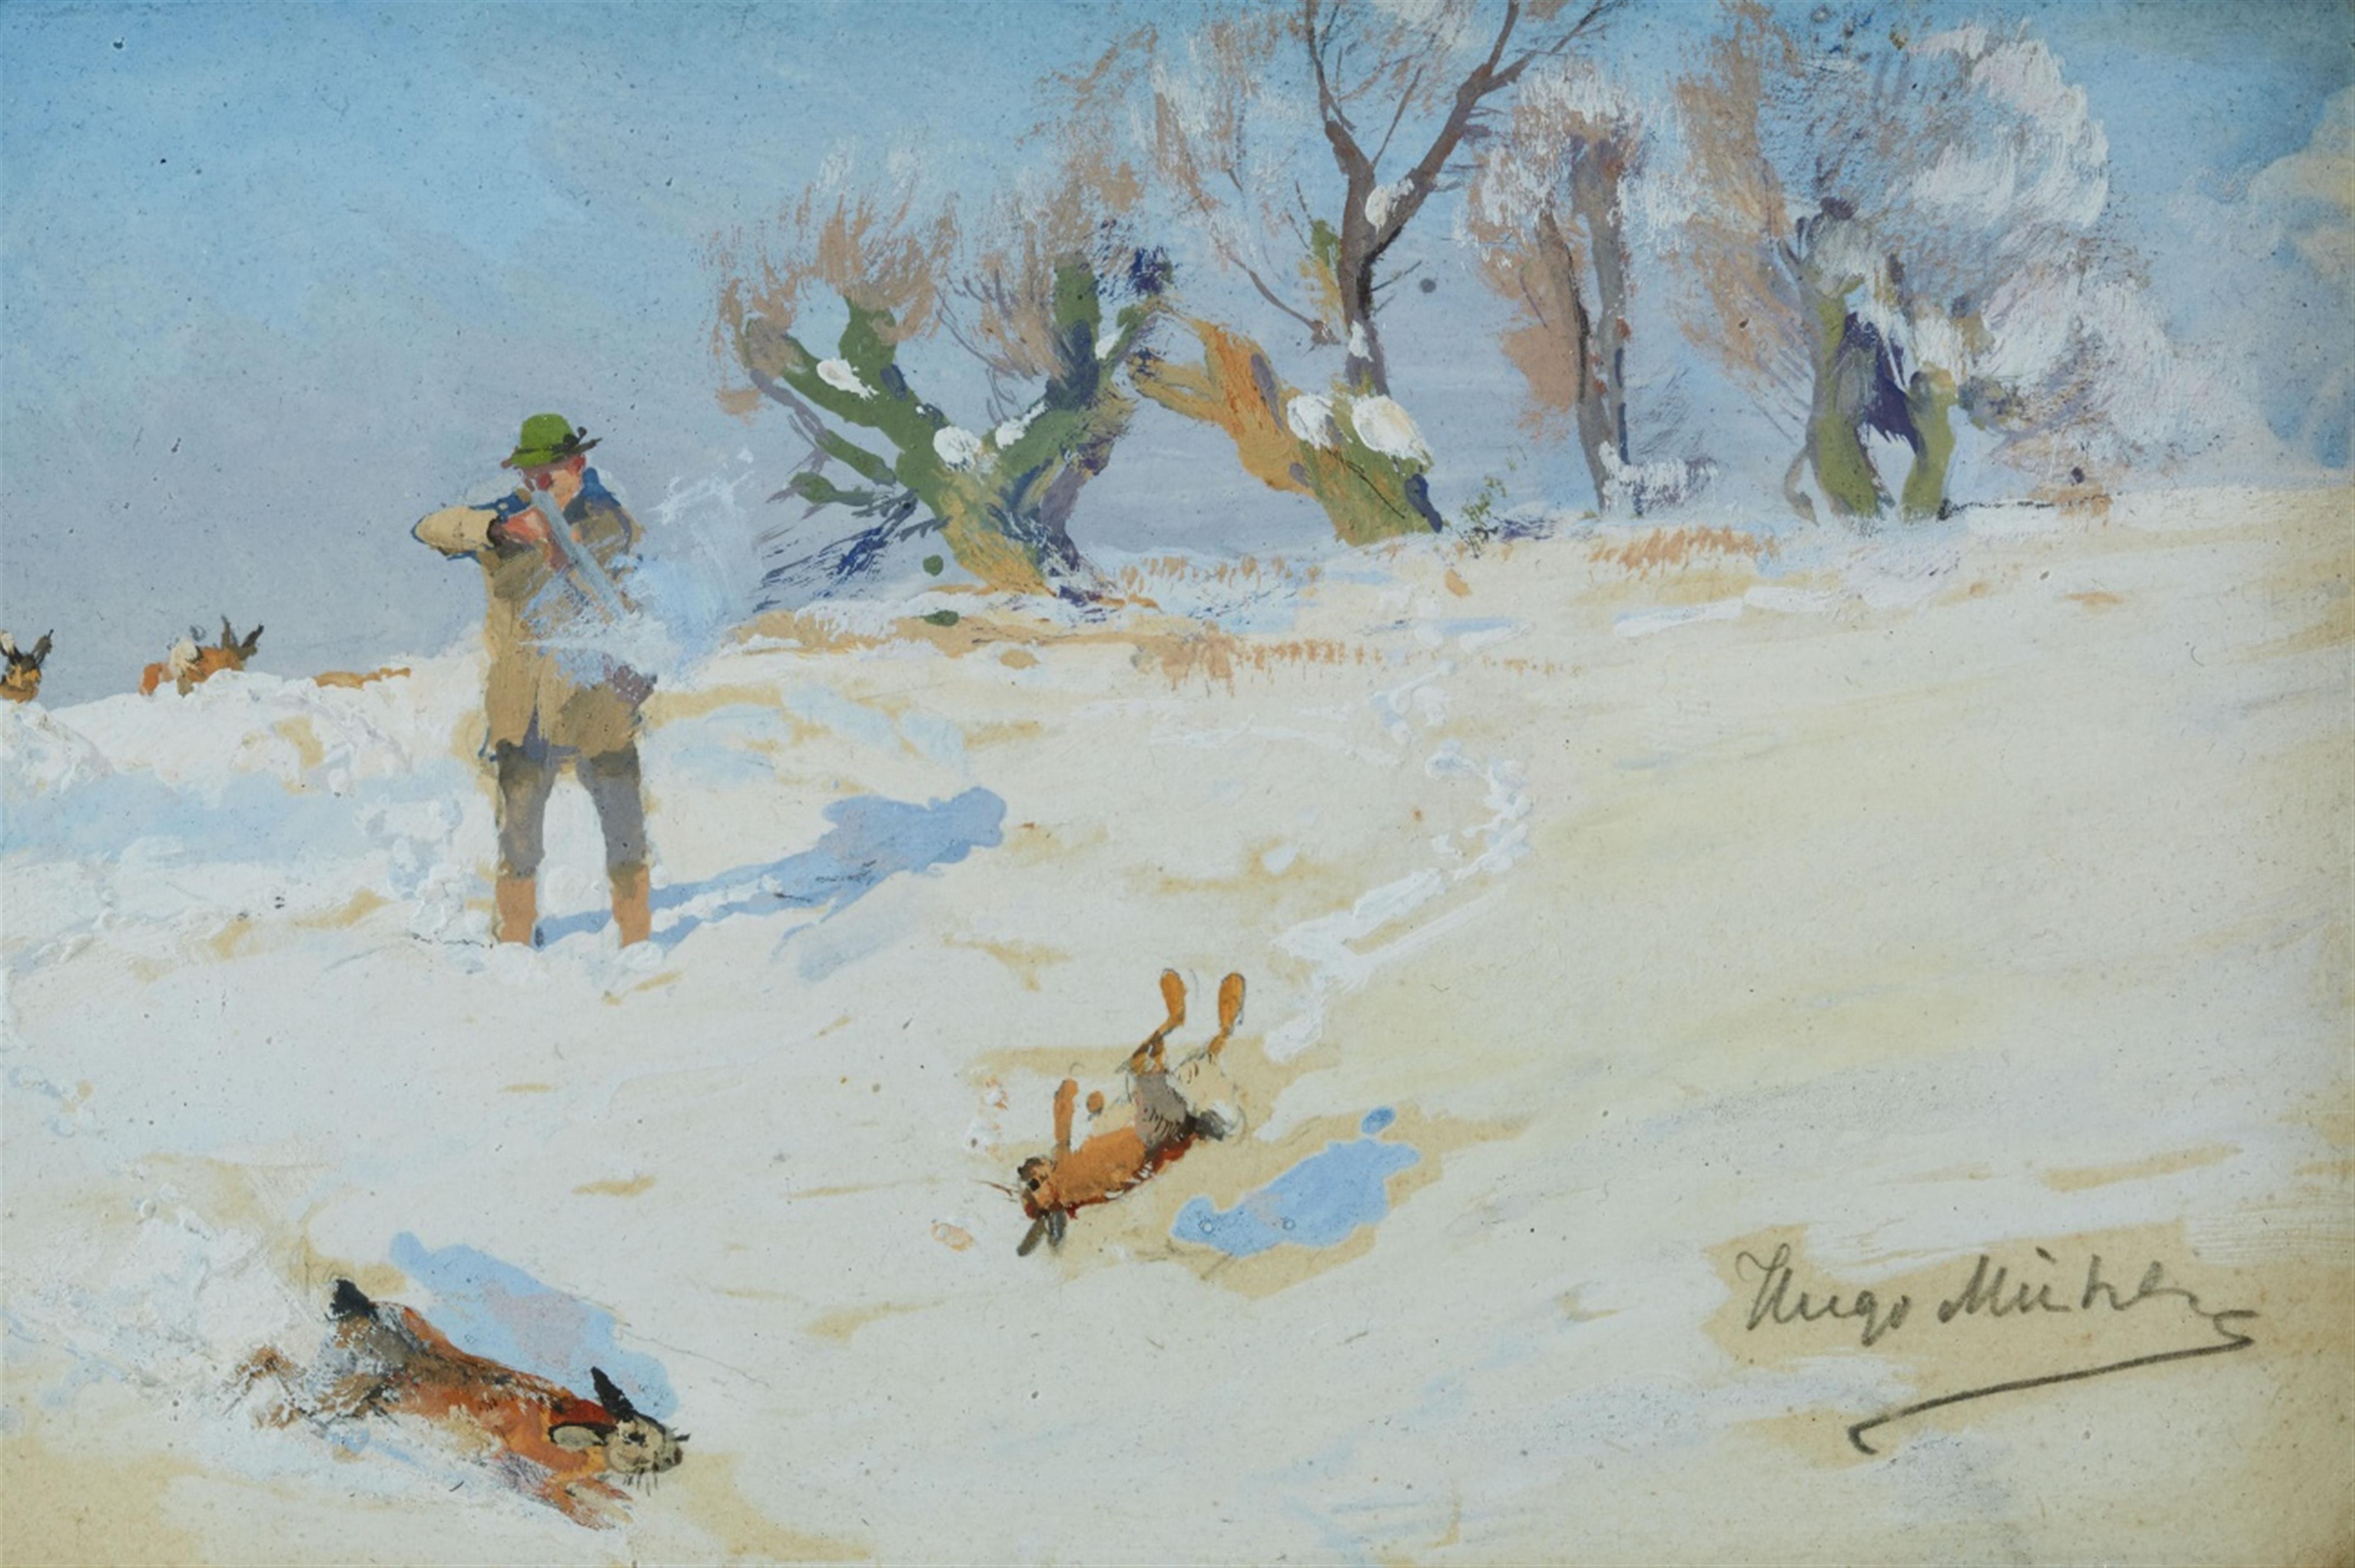 Hugo Mühlig - Winter Landscape with a Rabbit Hunt - image-1